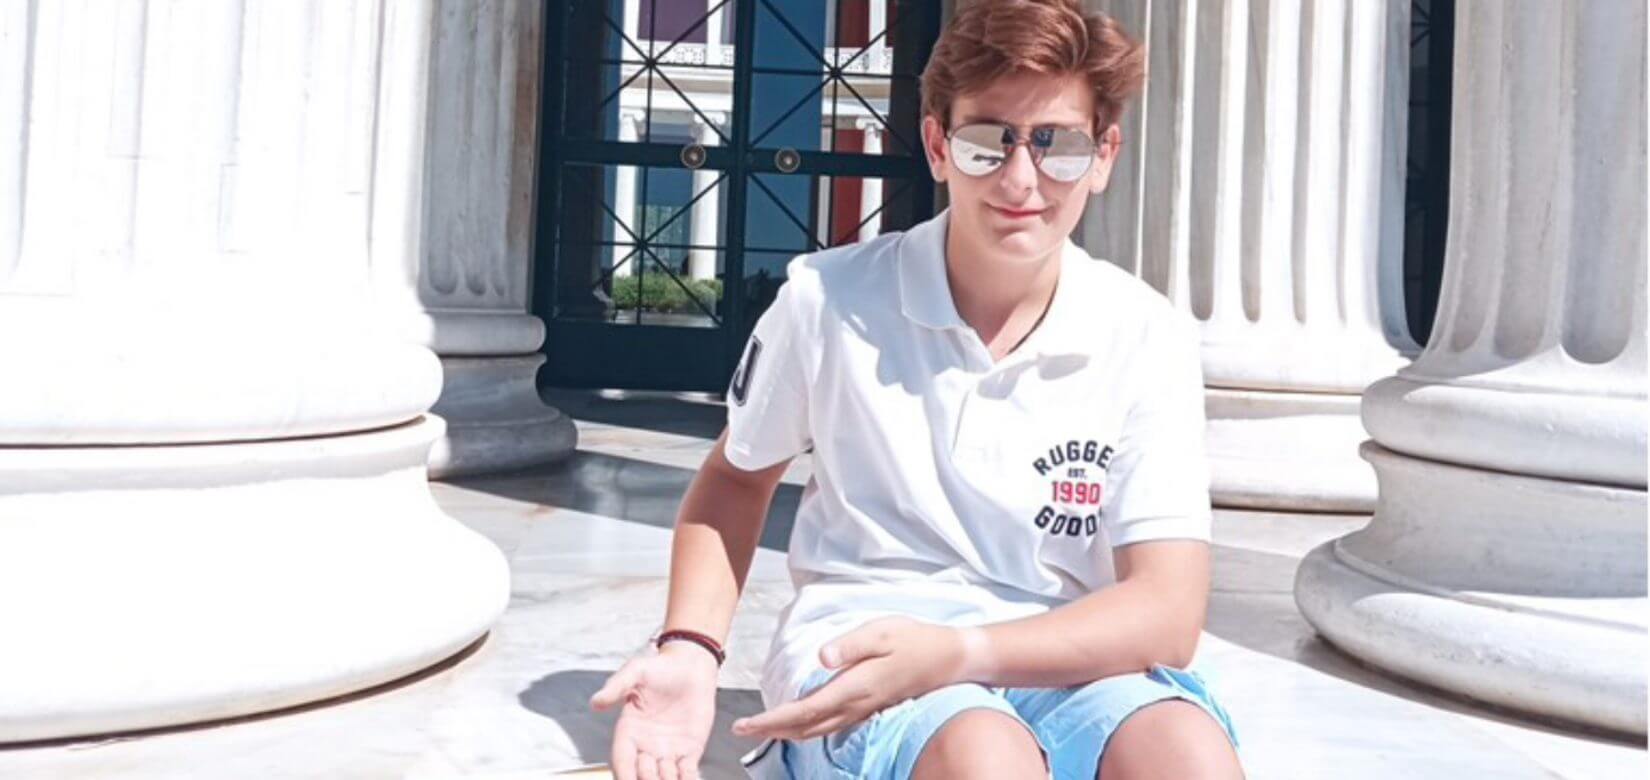 Ένας 14χρονος με παγκόσμιο βραβείο ποίησης μιλάει για τα όνειρα του